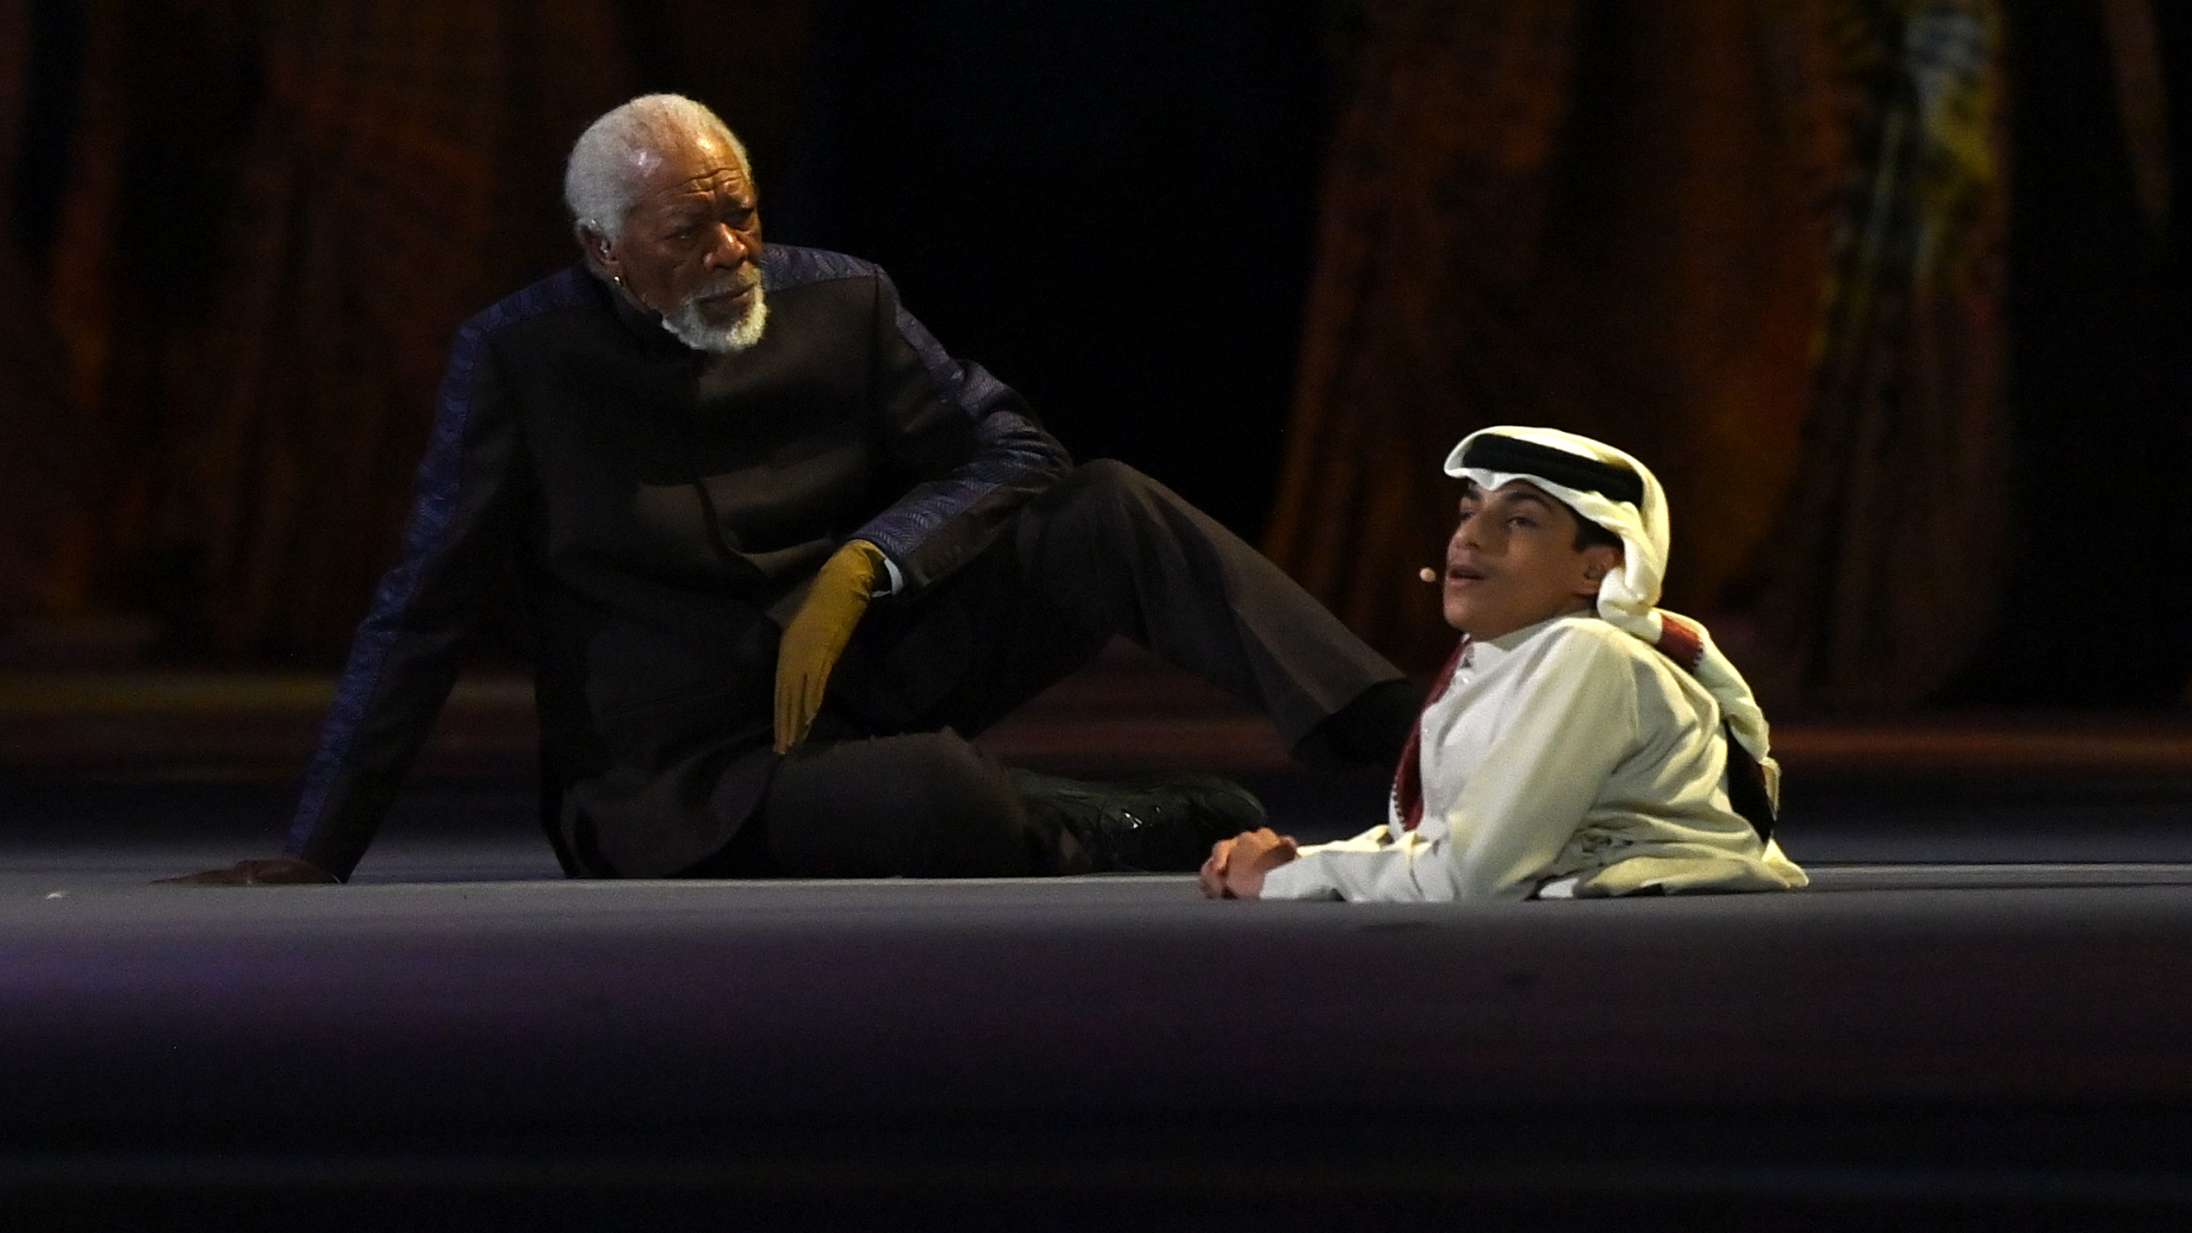 Morgan Freemans optræden ved åbningsceremonien i Qatar modtager heftig kritik